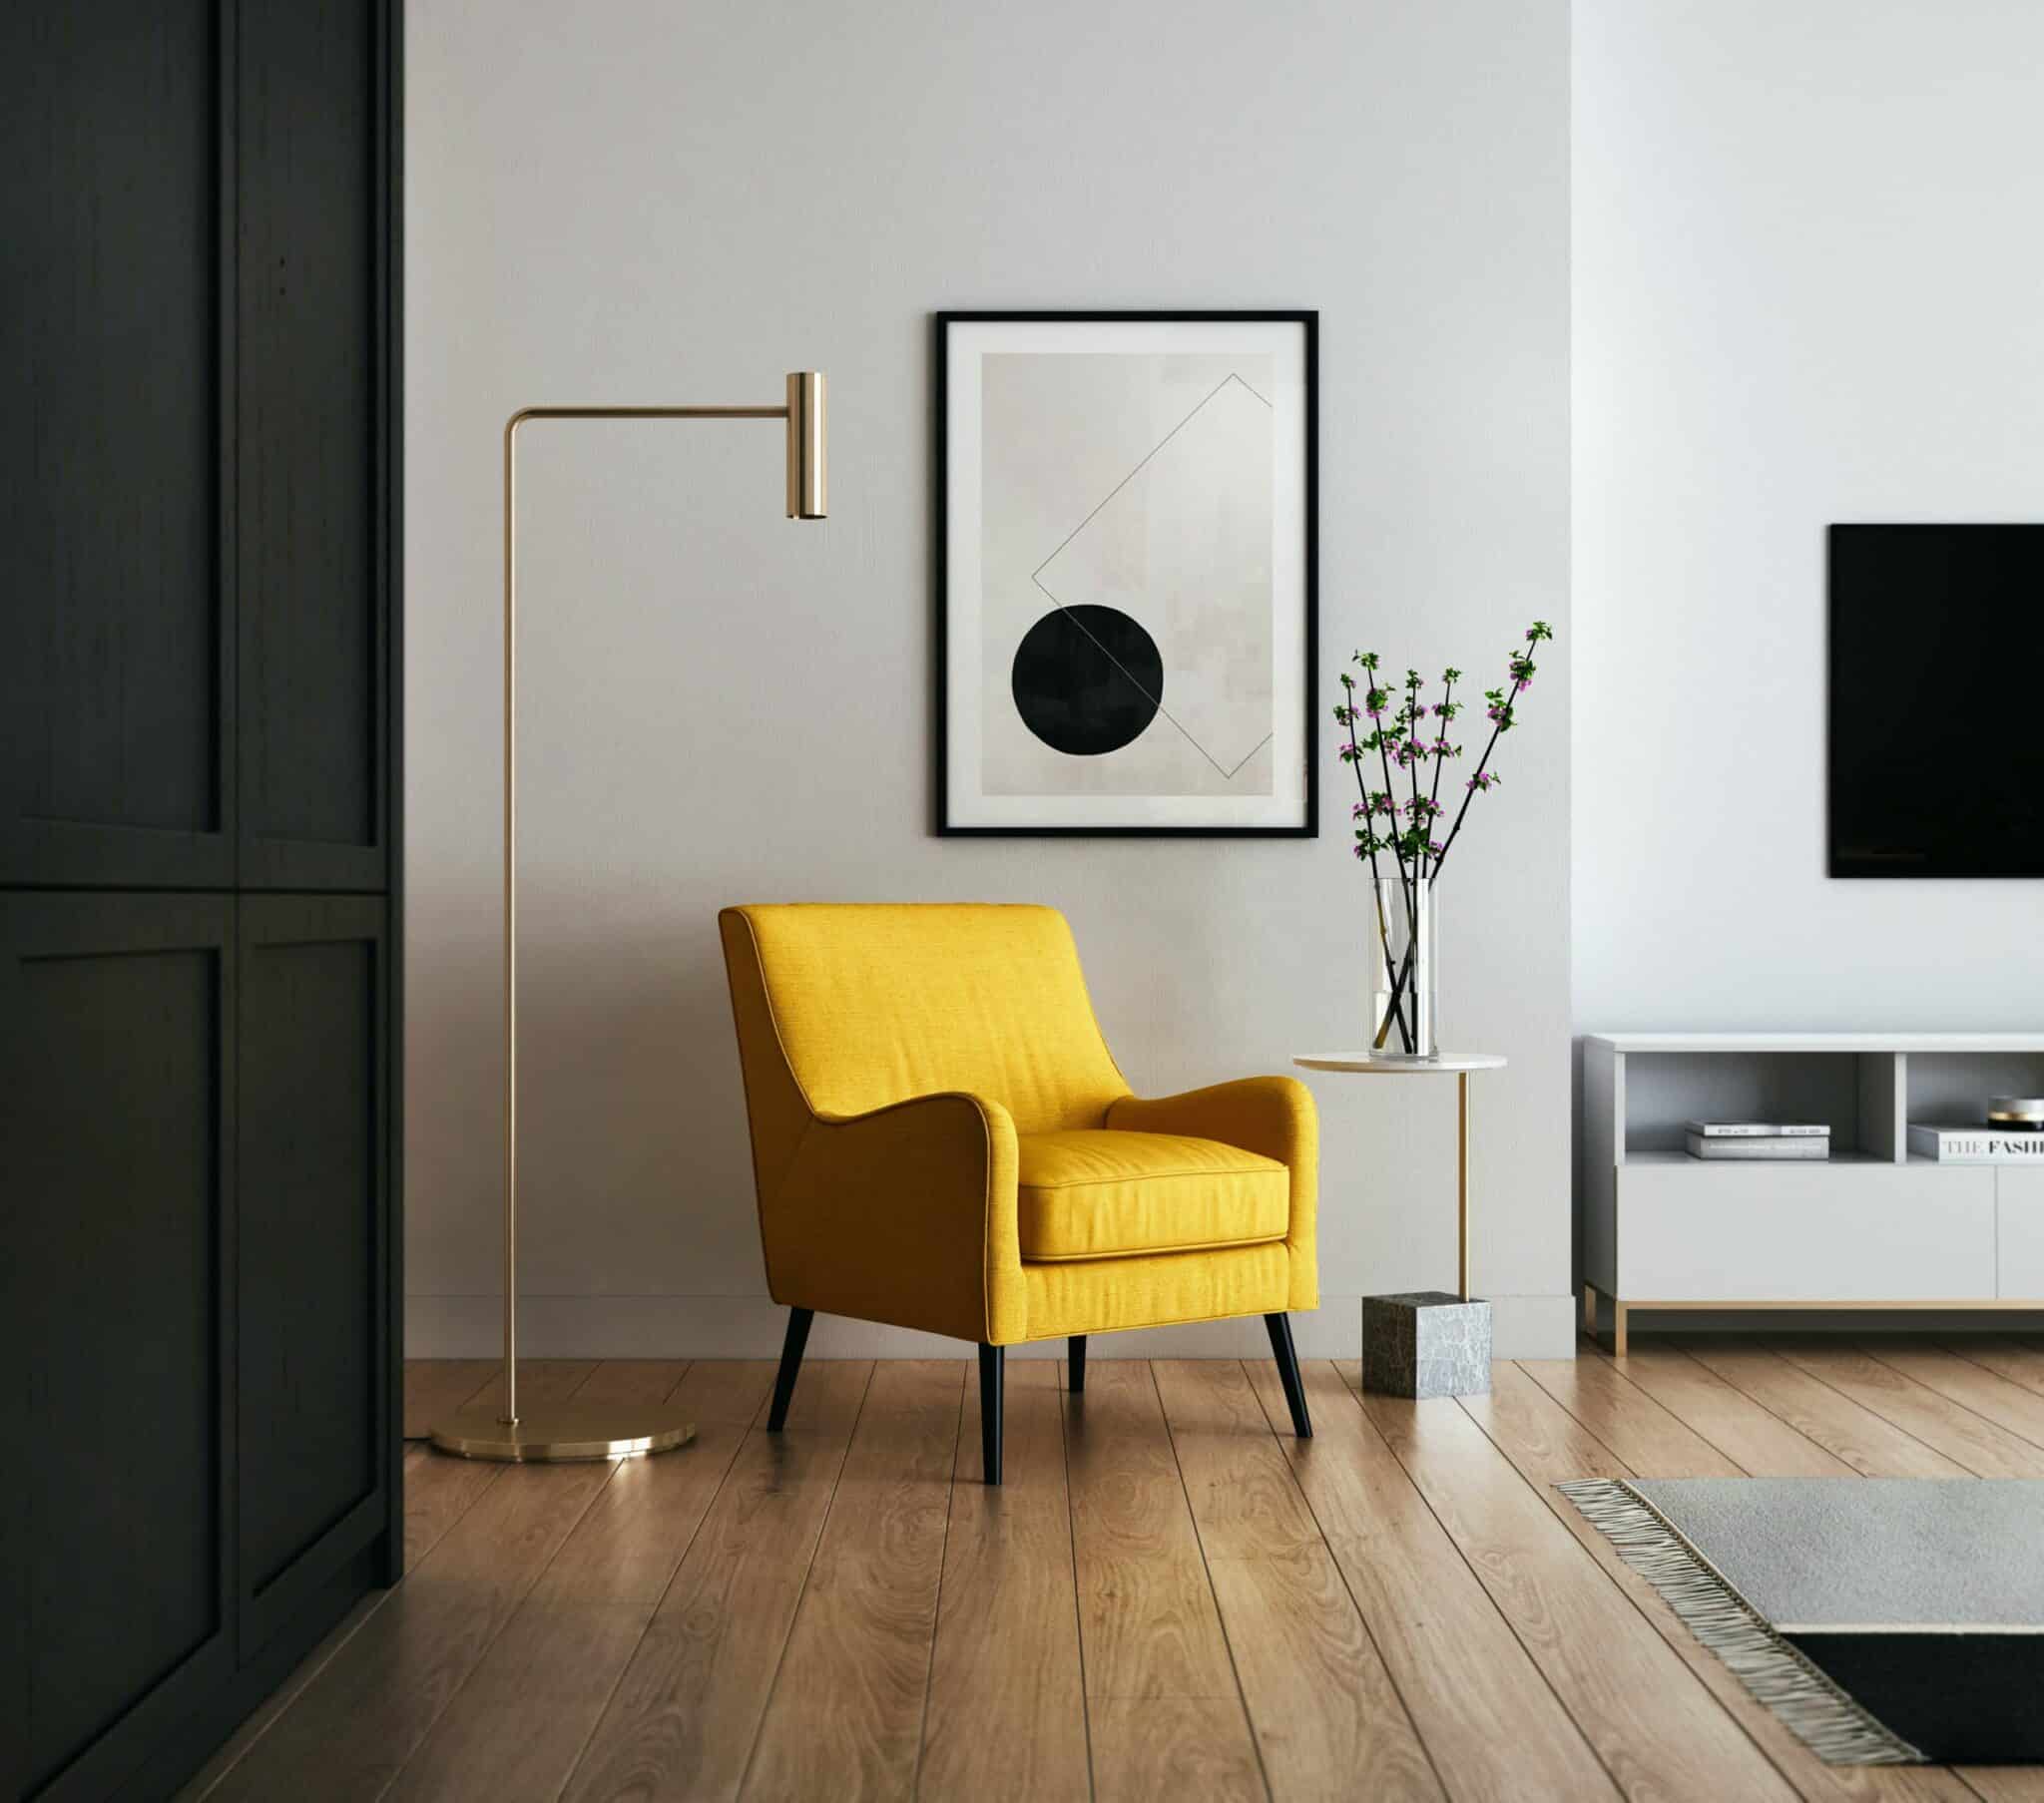 Quels sont les meubles obligatoires dans une location meublée ?